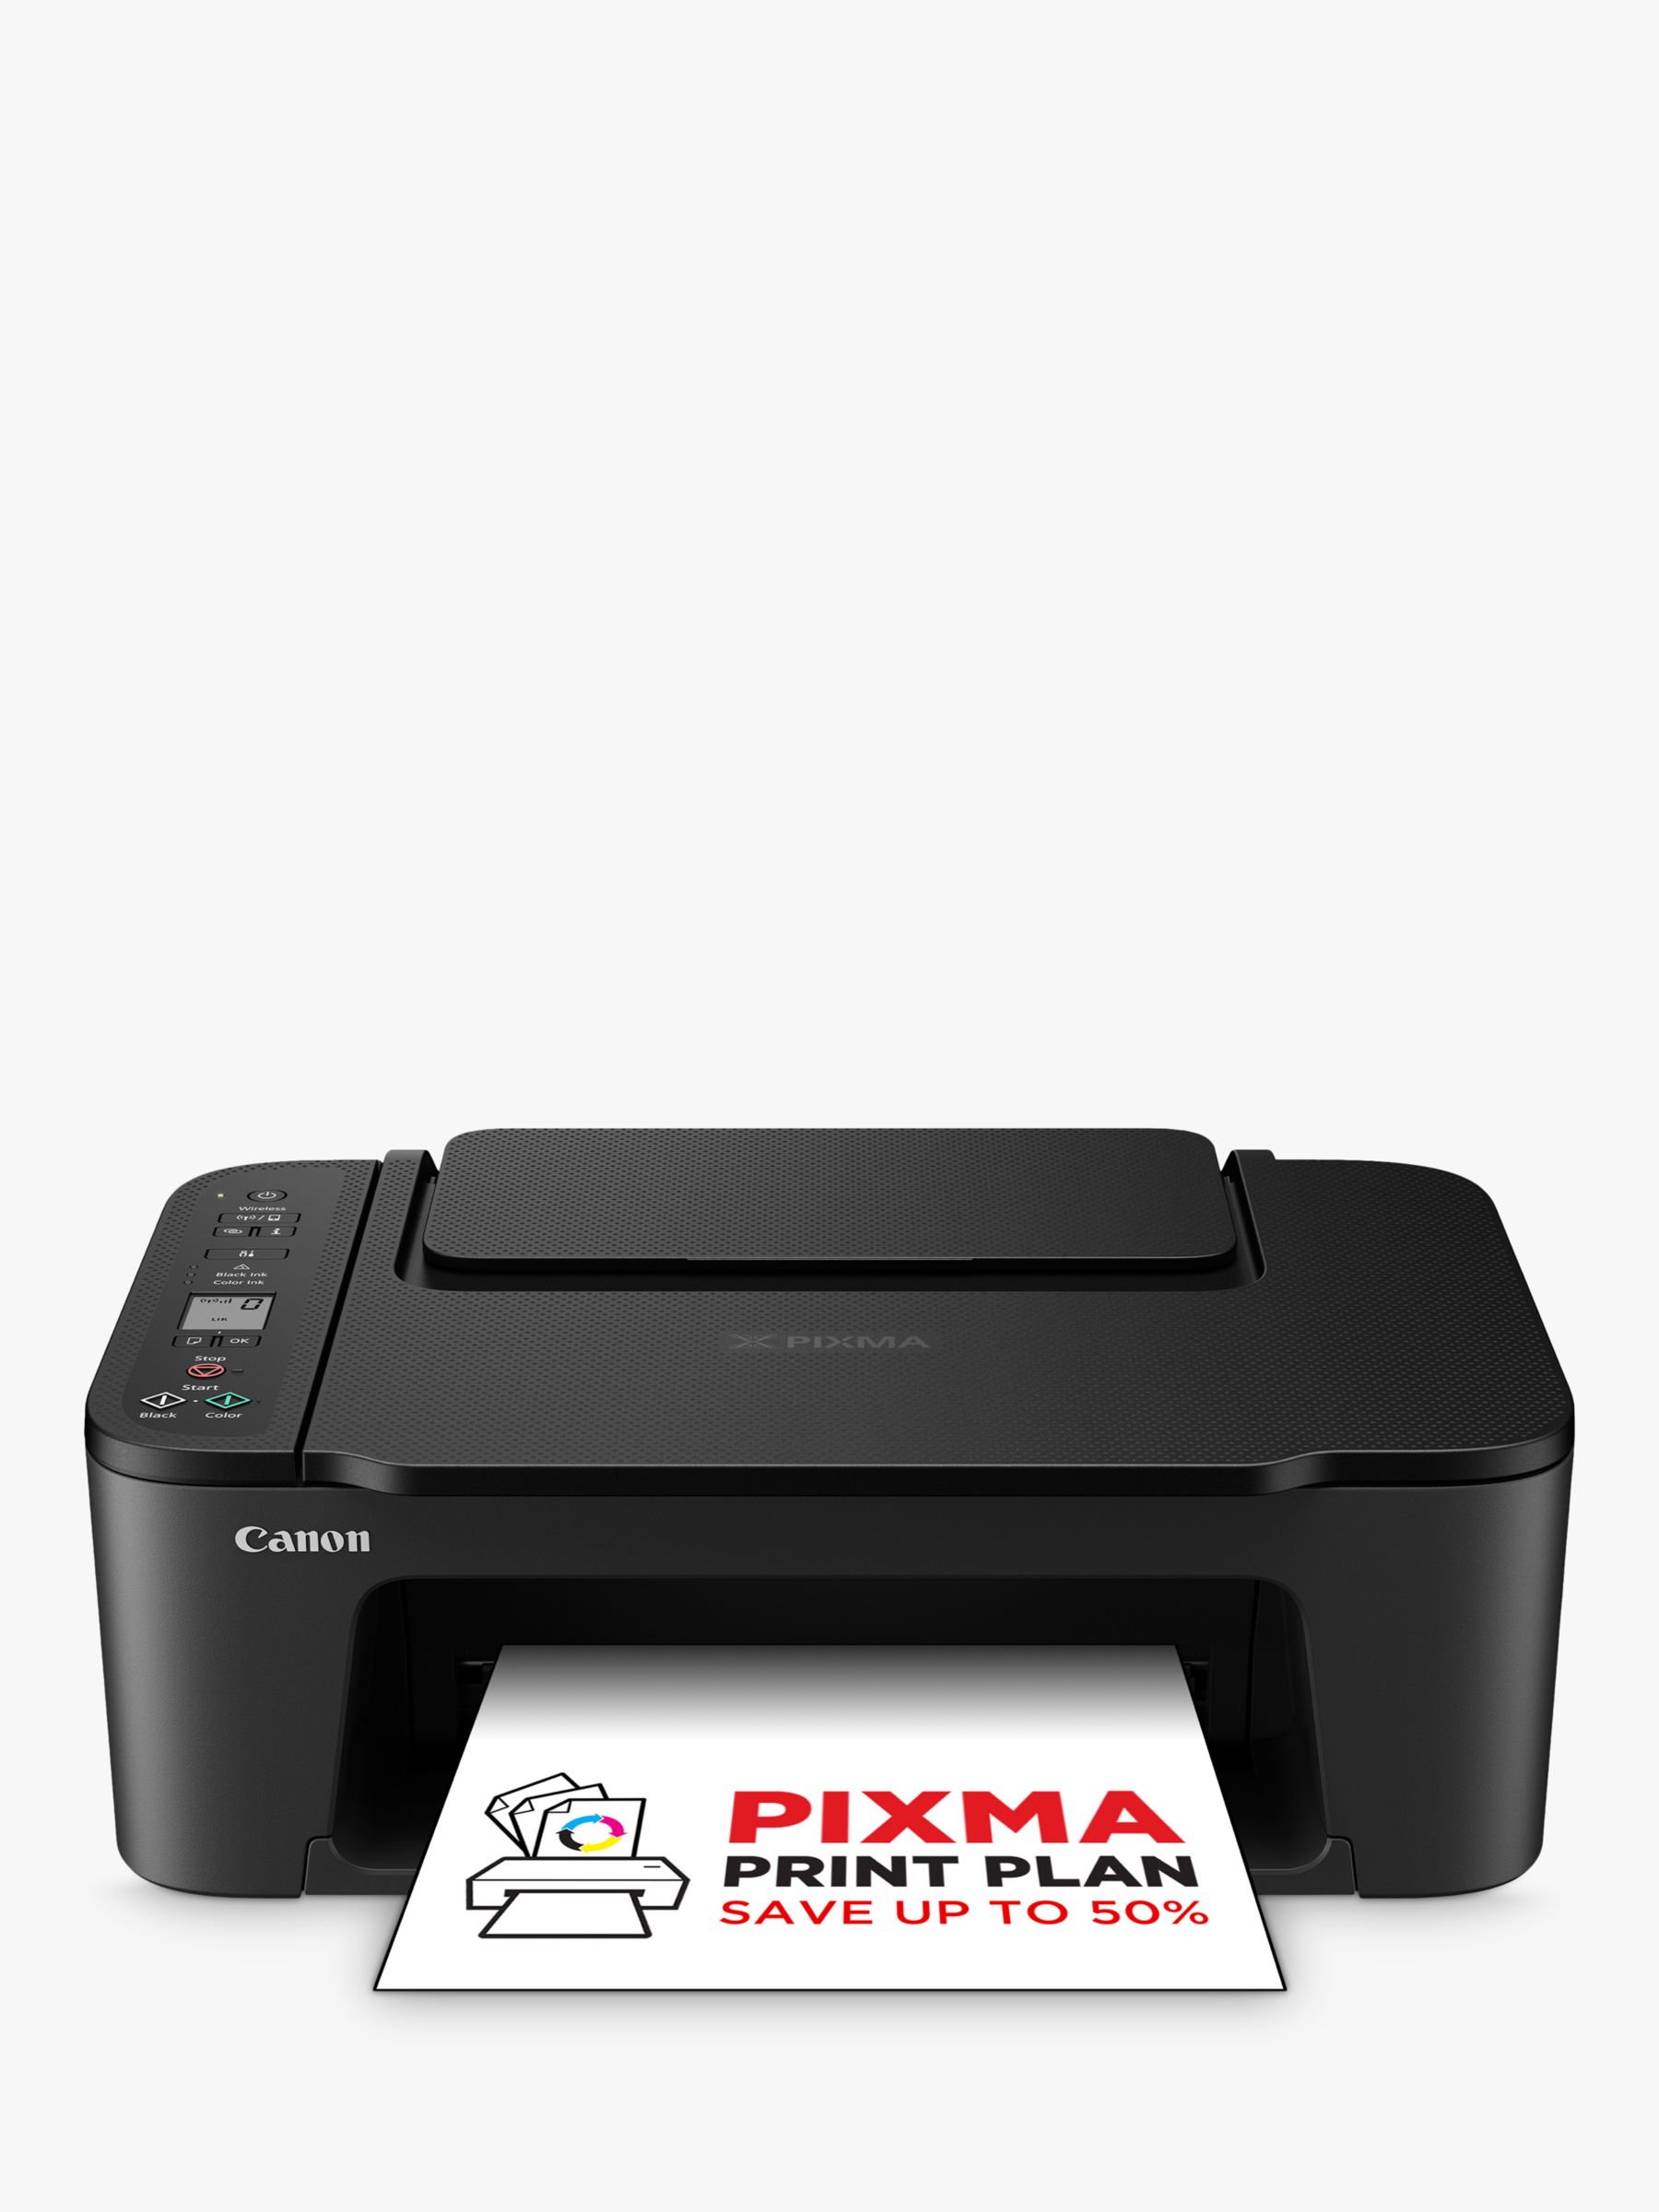 Printer, PIXMA Canon Black Wi-Fi TS3550i All-in-One Wireless